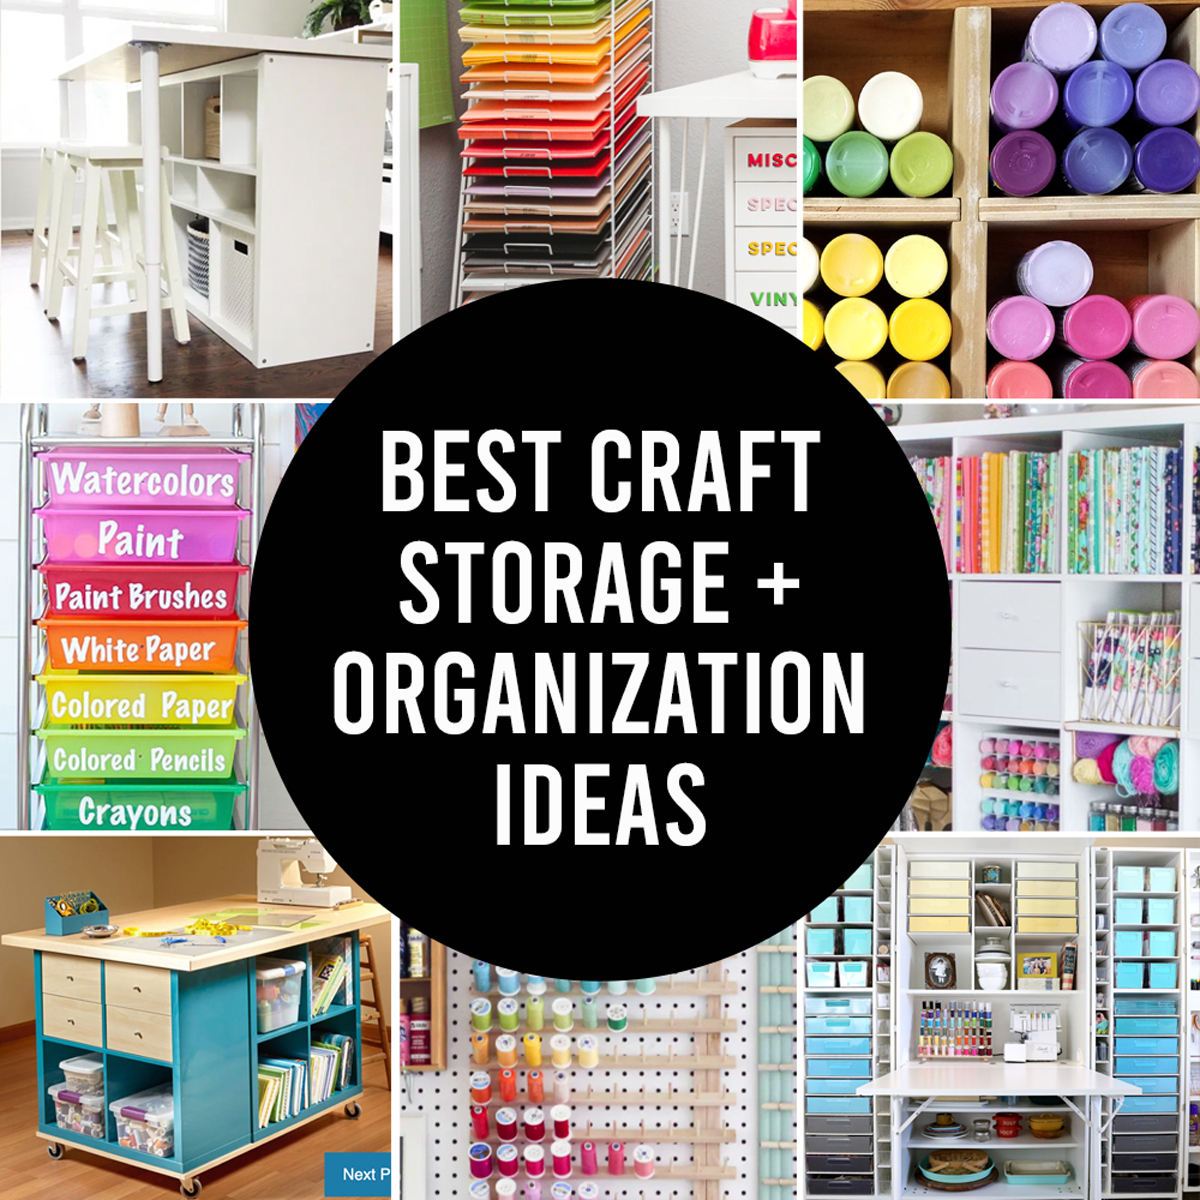 53 BEST Craft Organization And Craft Storage Ideas  Craft storage  organization, Craft storage, Craft room organization